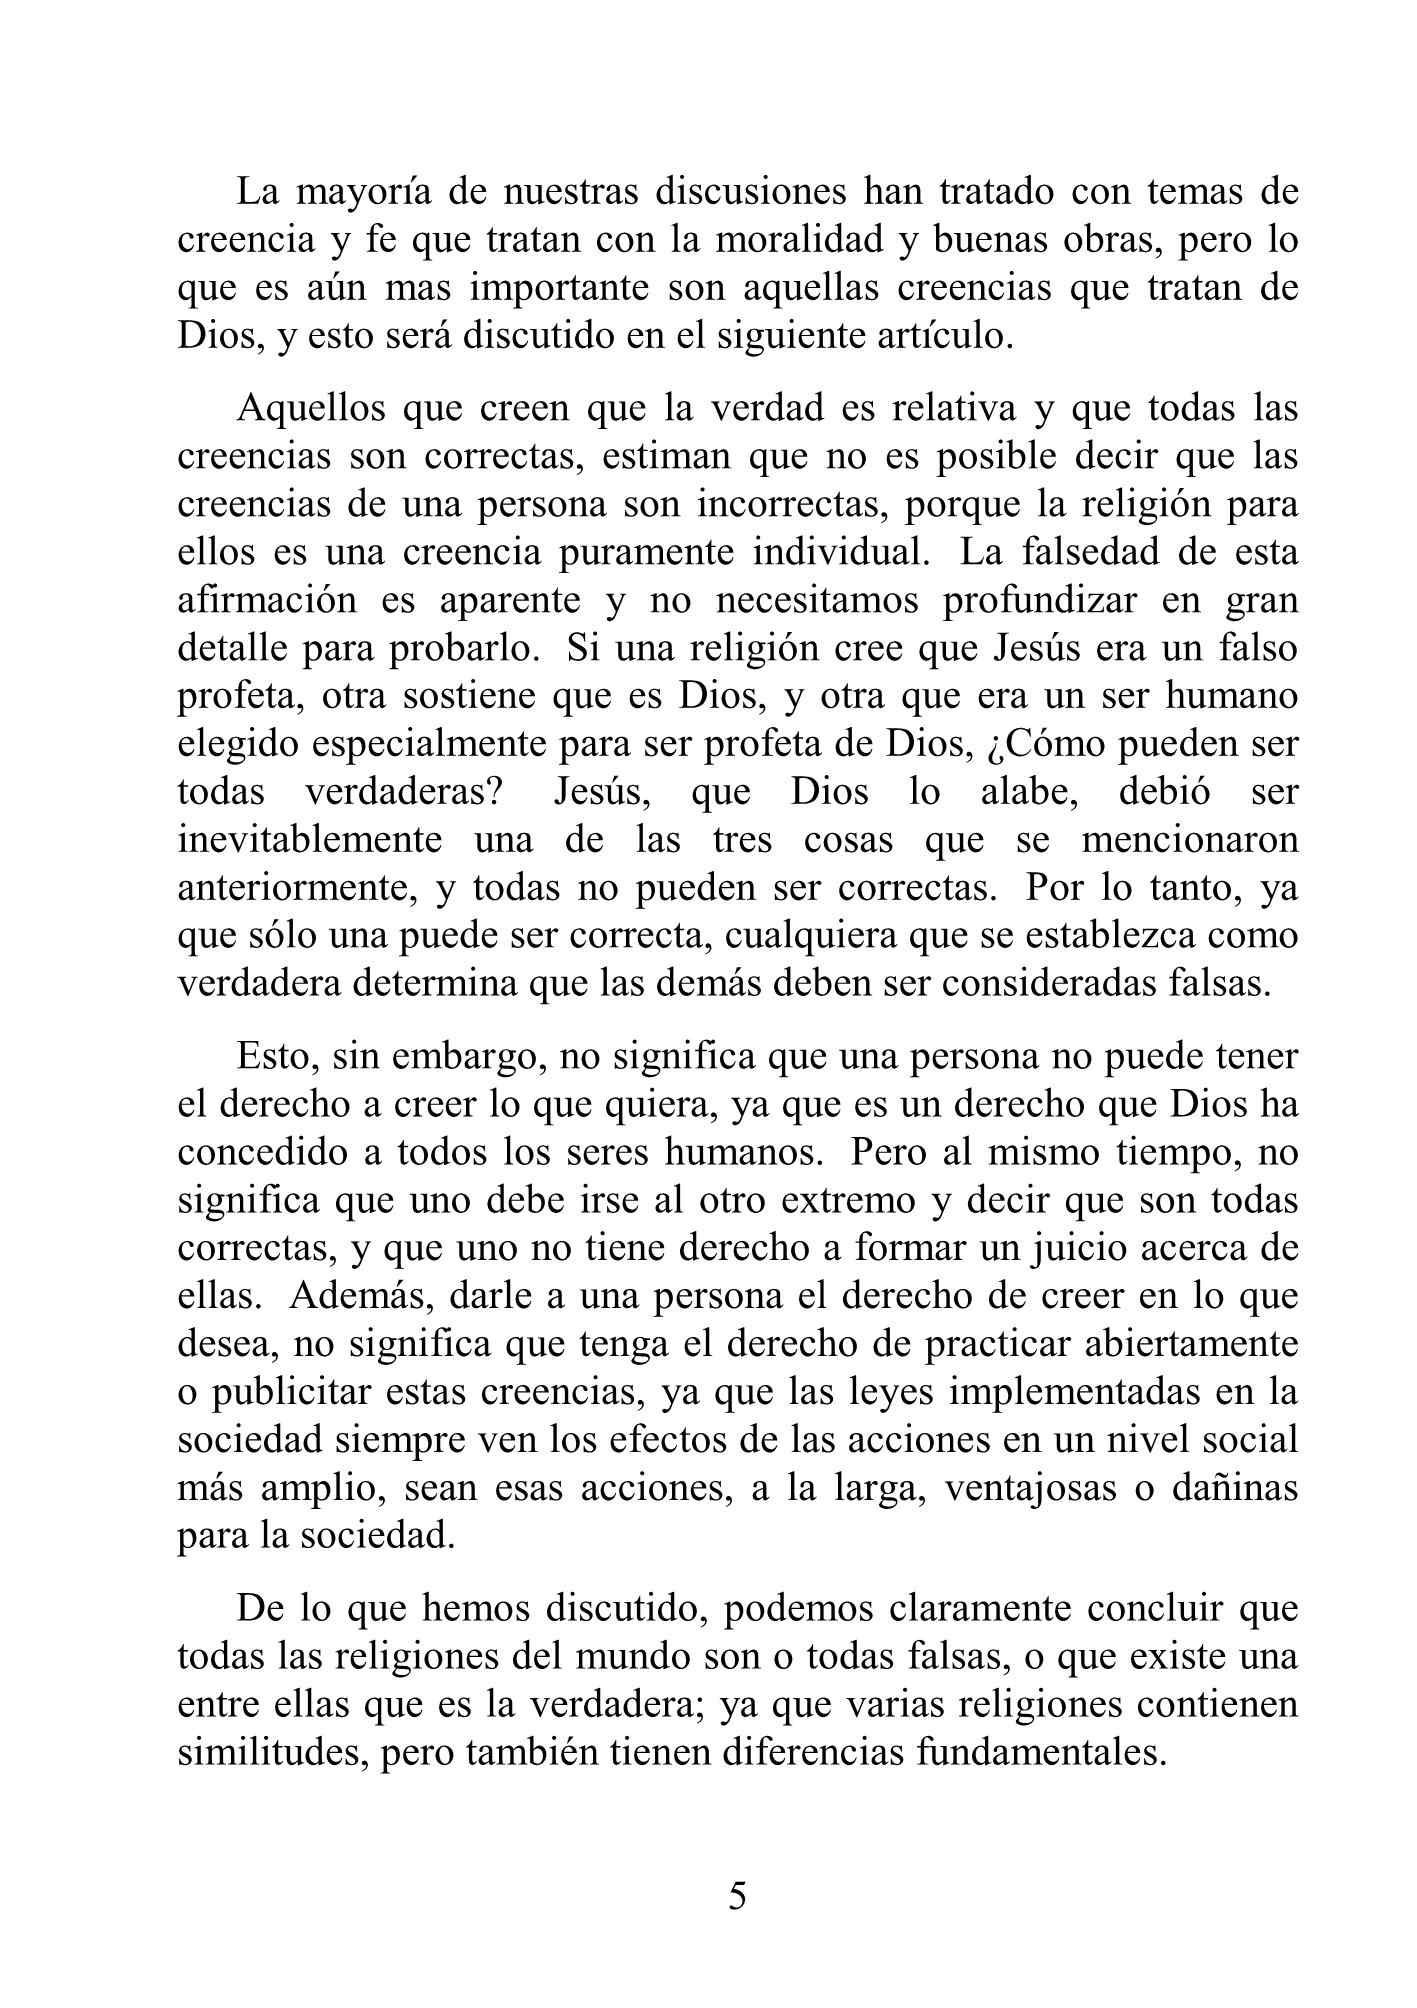 إسباني - الحقيقة واحدة - La Verdad es Única.pdf, 7-Sayfa 